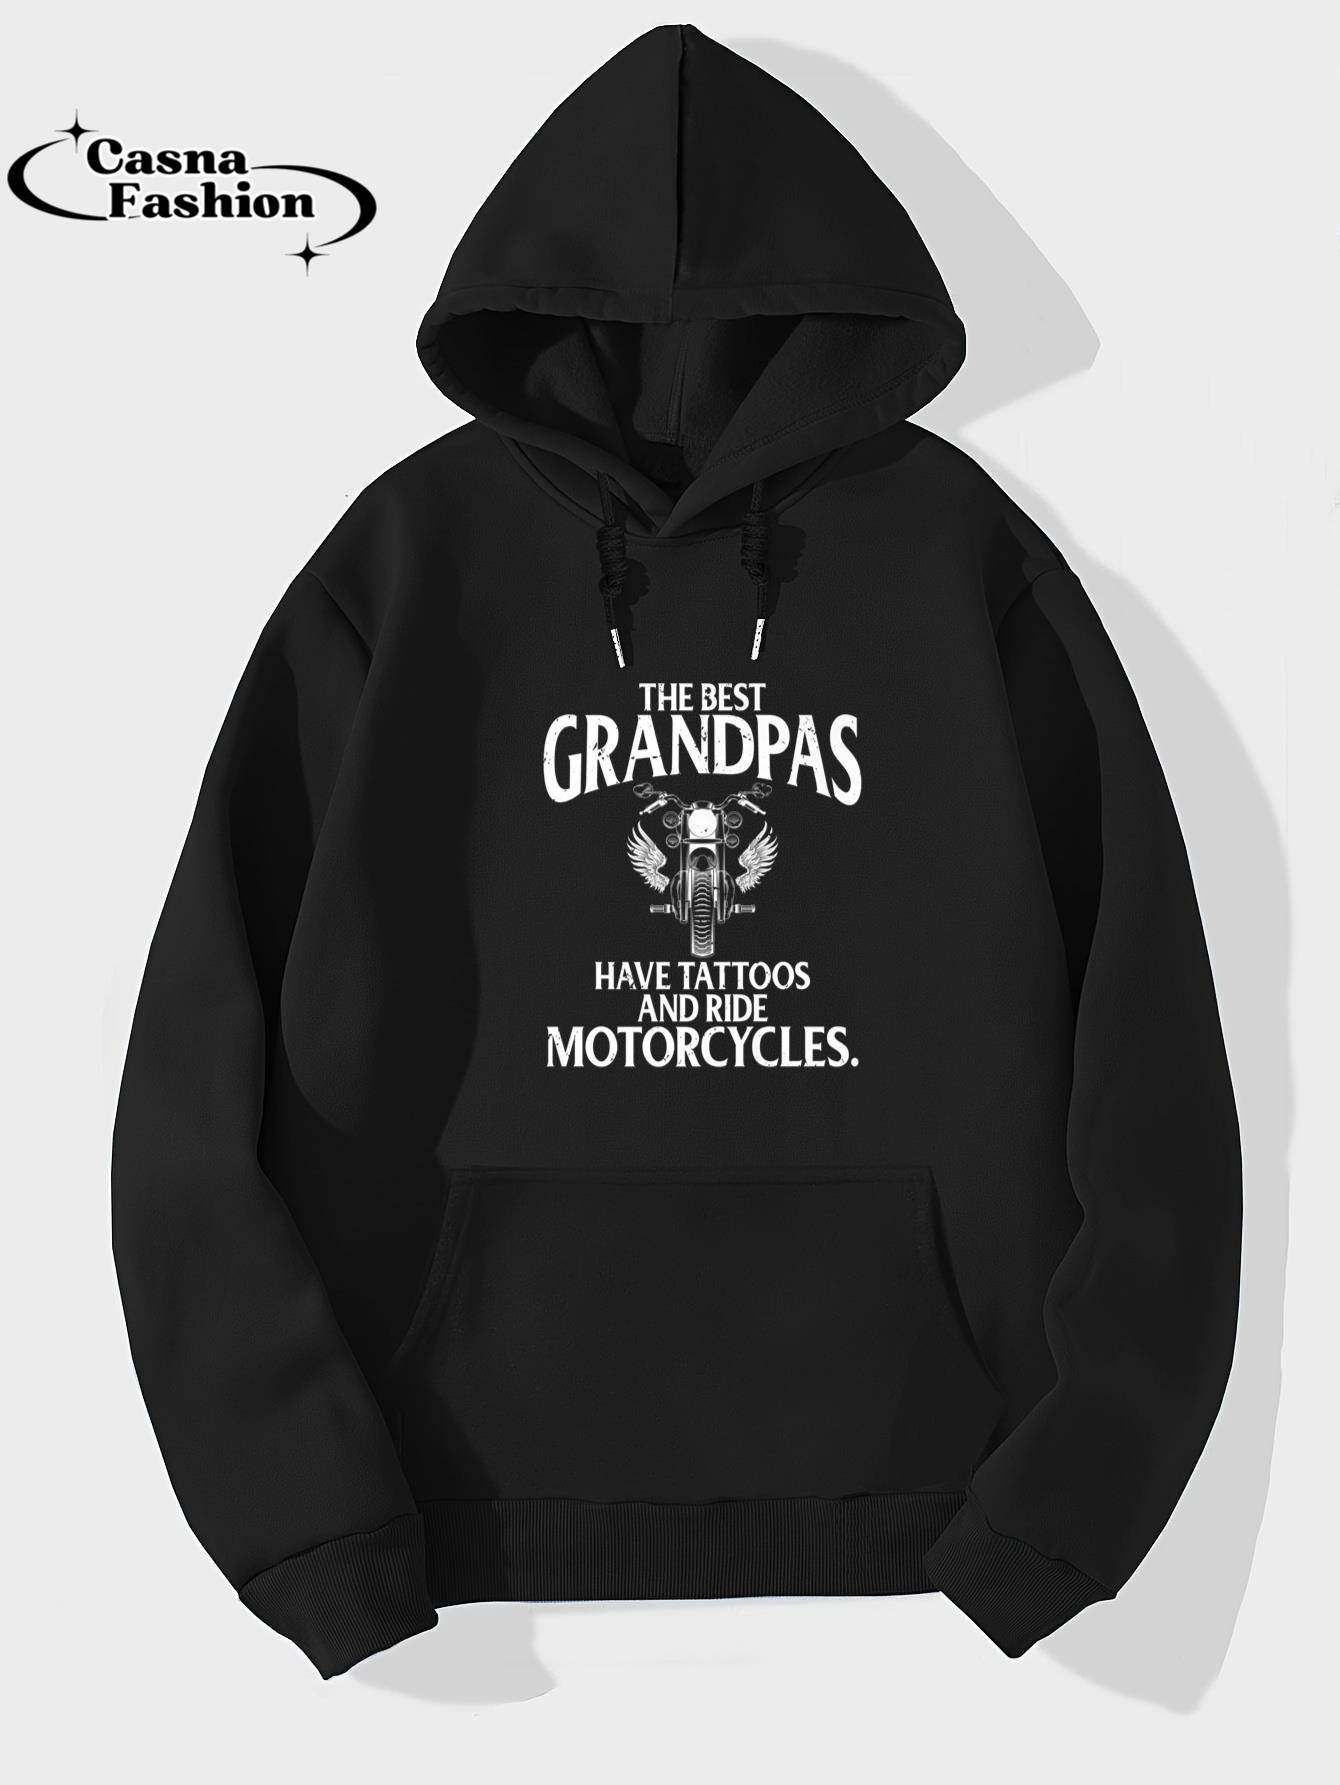 casnafashion_Hoodie_Best Grandpas Have Tattoos and Ride Motorcycles Biker Biking Premium T-Shirt_hoodie_black hoodie